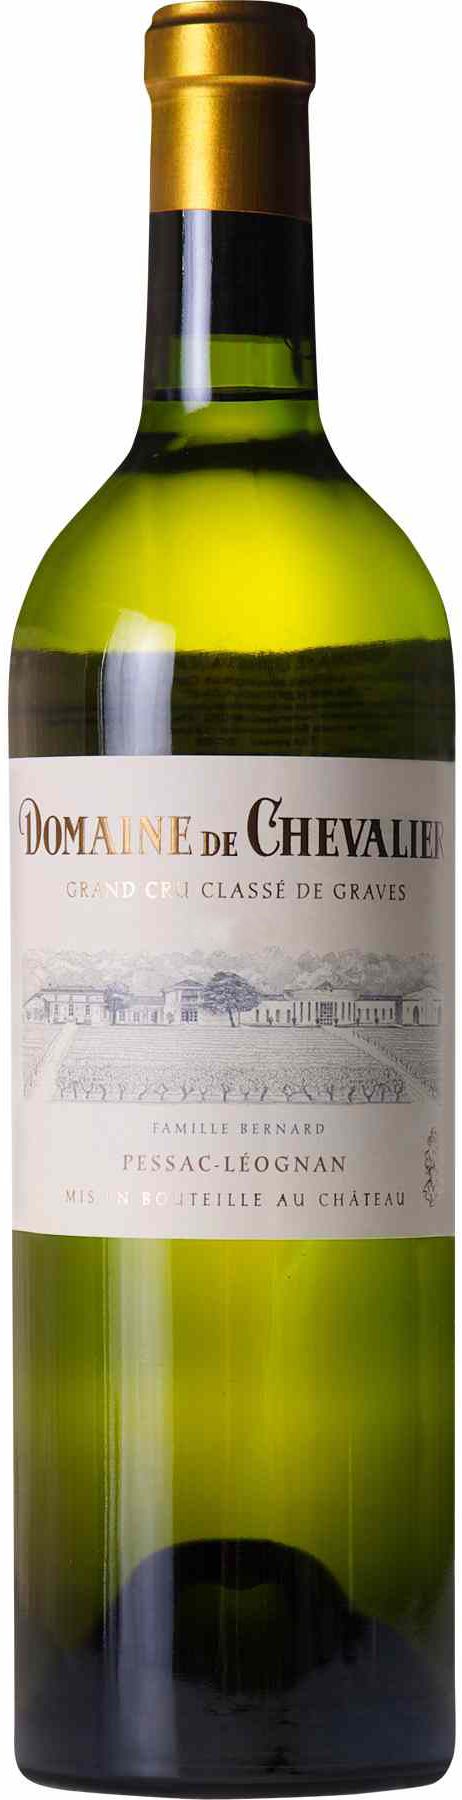 Domaine De Chevalier, Blanc, 2006